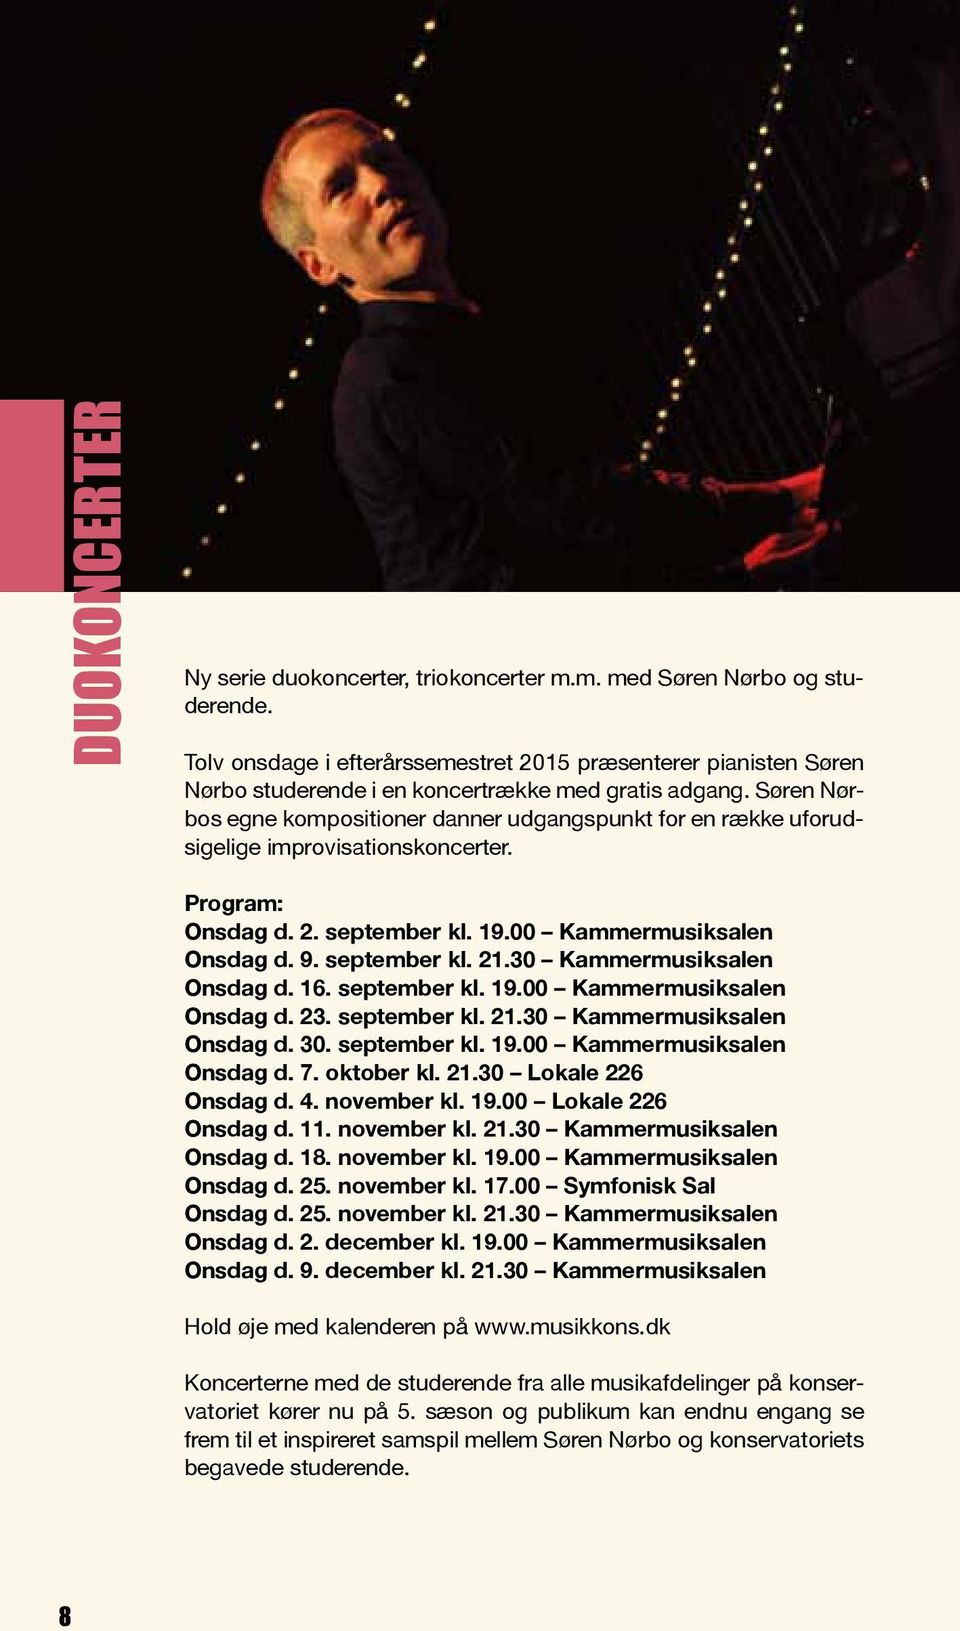 Søren Nørbos egne kompositioner danner udgangspunkt for en række uforudsigelige improvisationskoncerter. Program: Onsdag d. 2. september kl. 19.00 Kammermusiksalen Onsdag d. 9. september kl. 21.